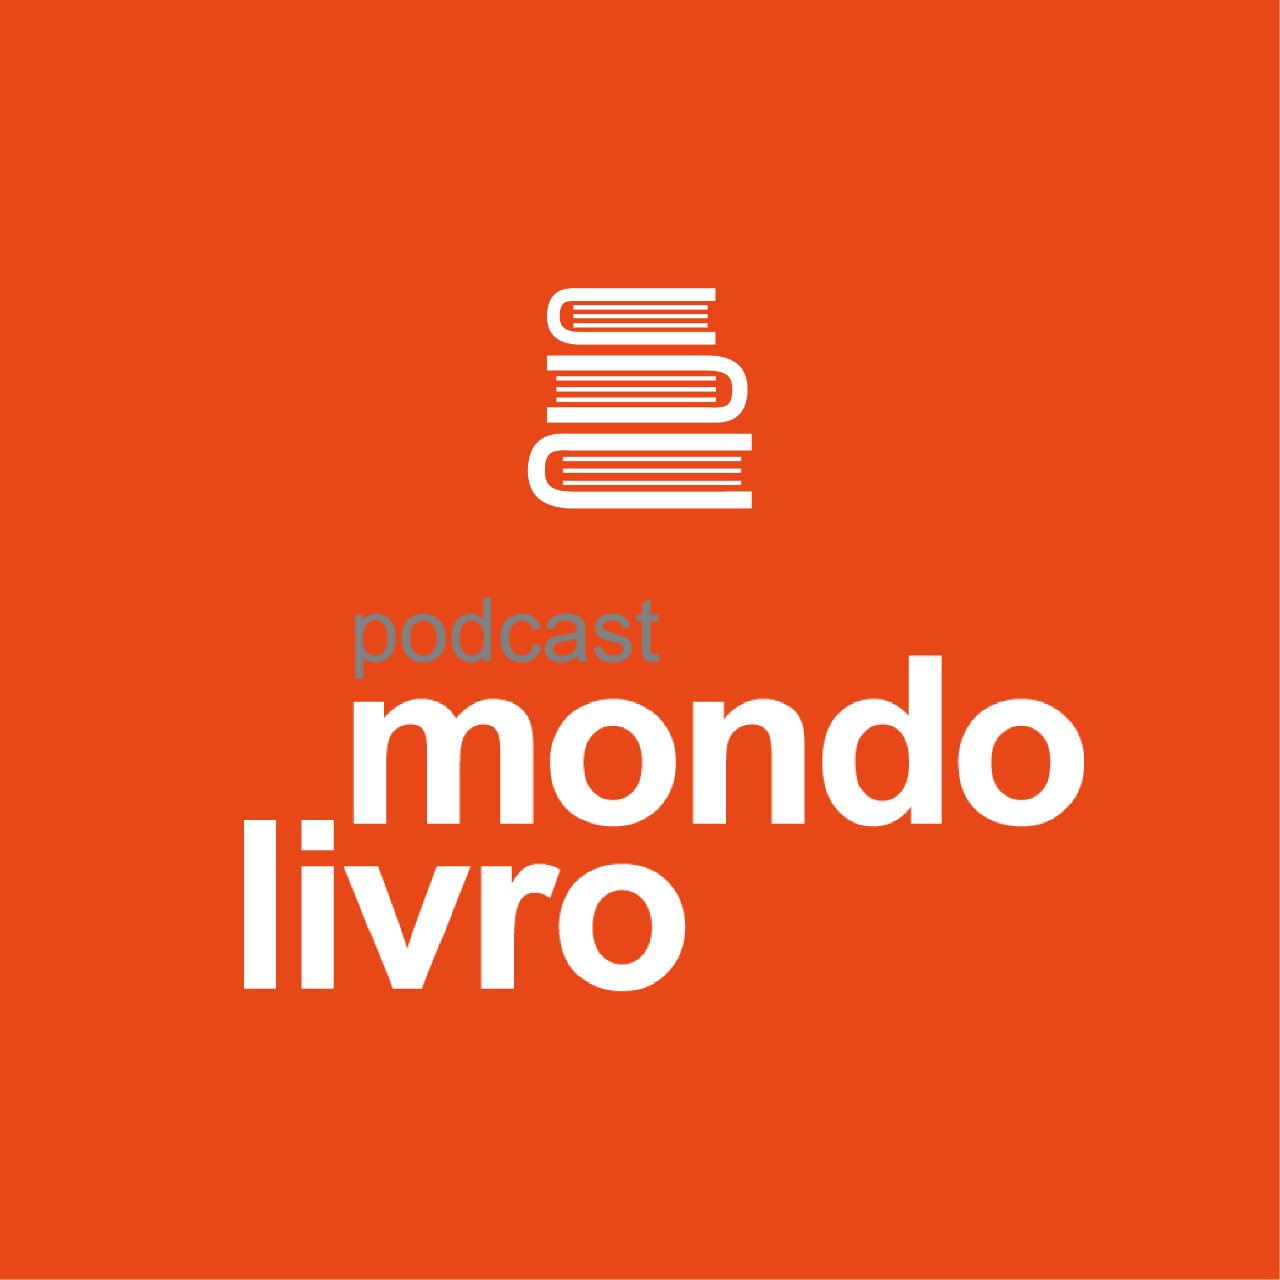 Mondolivro Podcast - Tom Farias em "Toda Fúria"